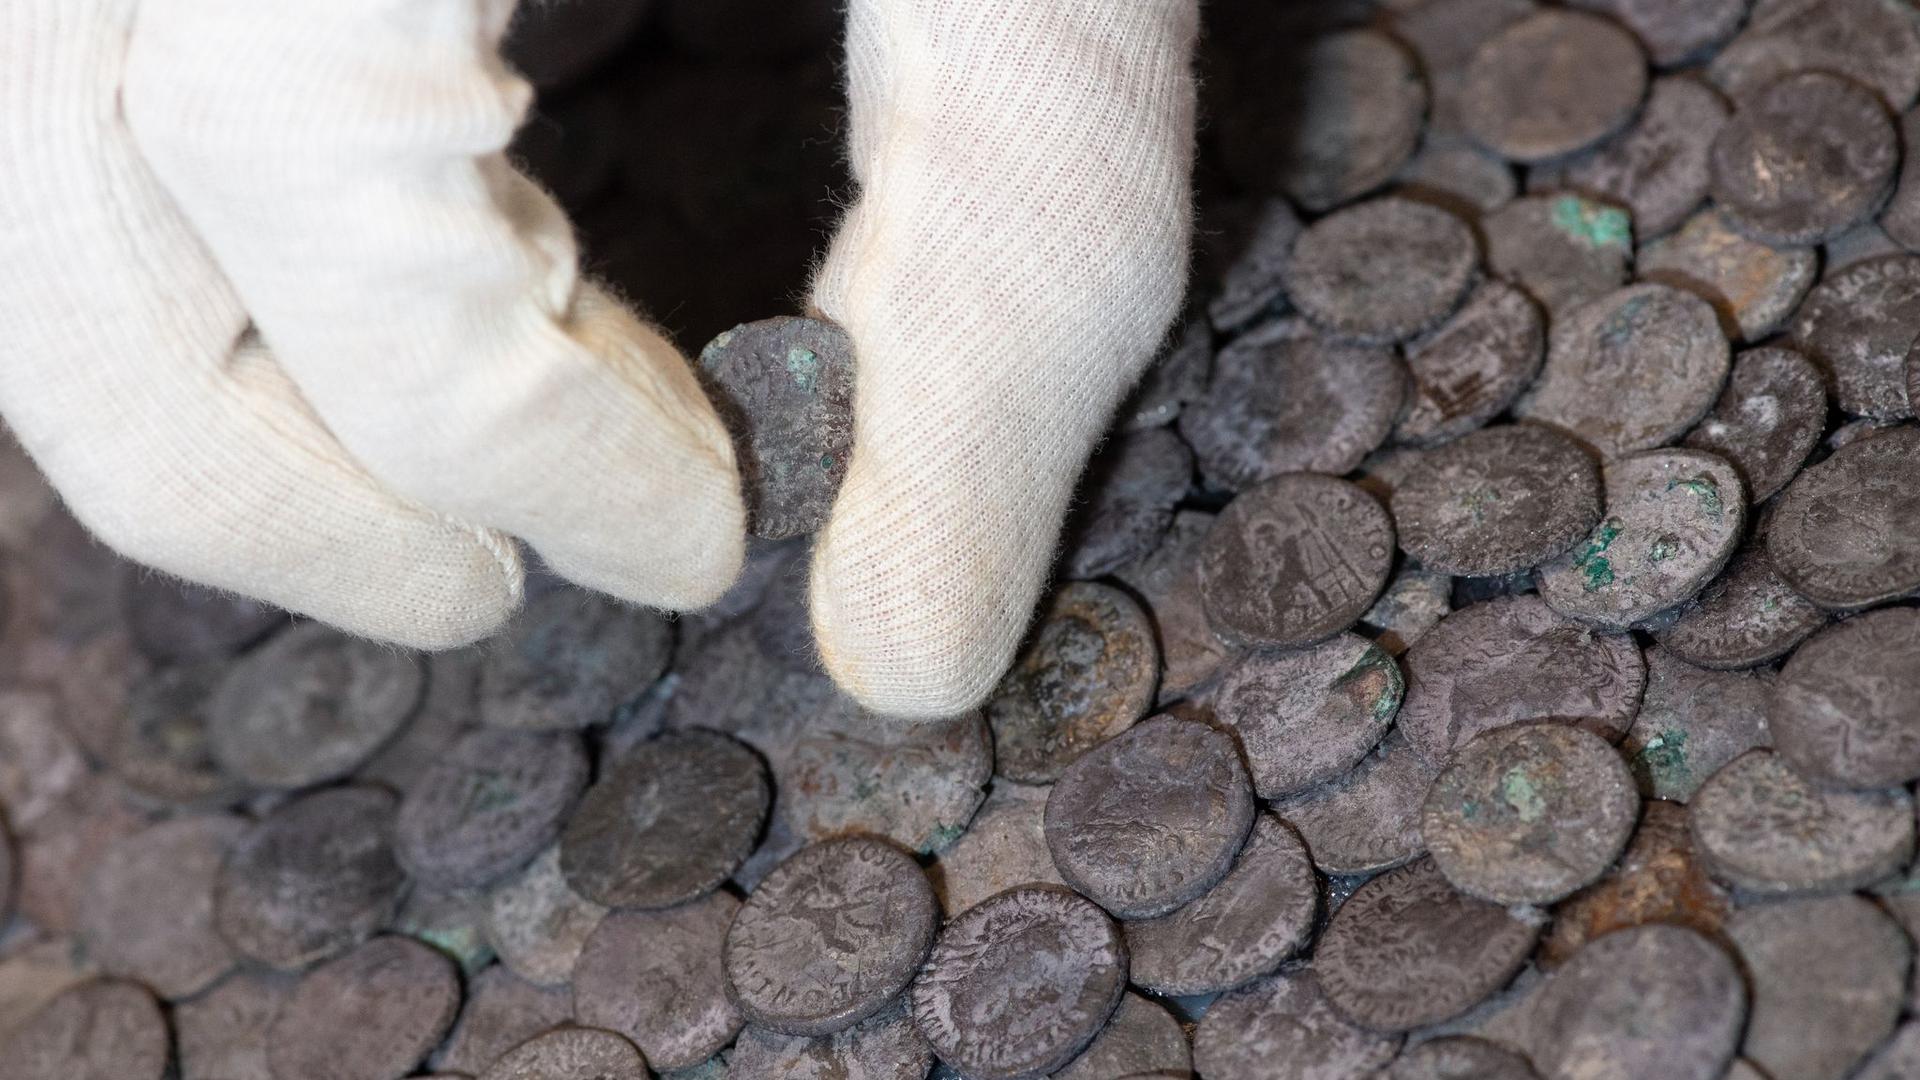 Silbermünzen: Bei dem Fund handelt es sich um den größten römischen Silberschatz, der je auf bayerischem Gebiet gefunden wurde.